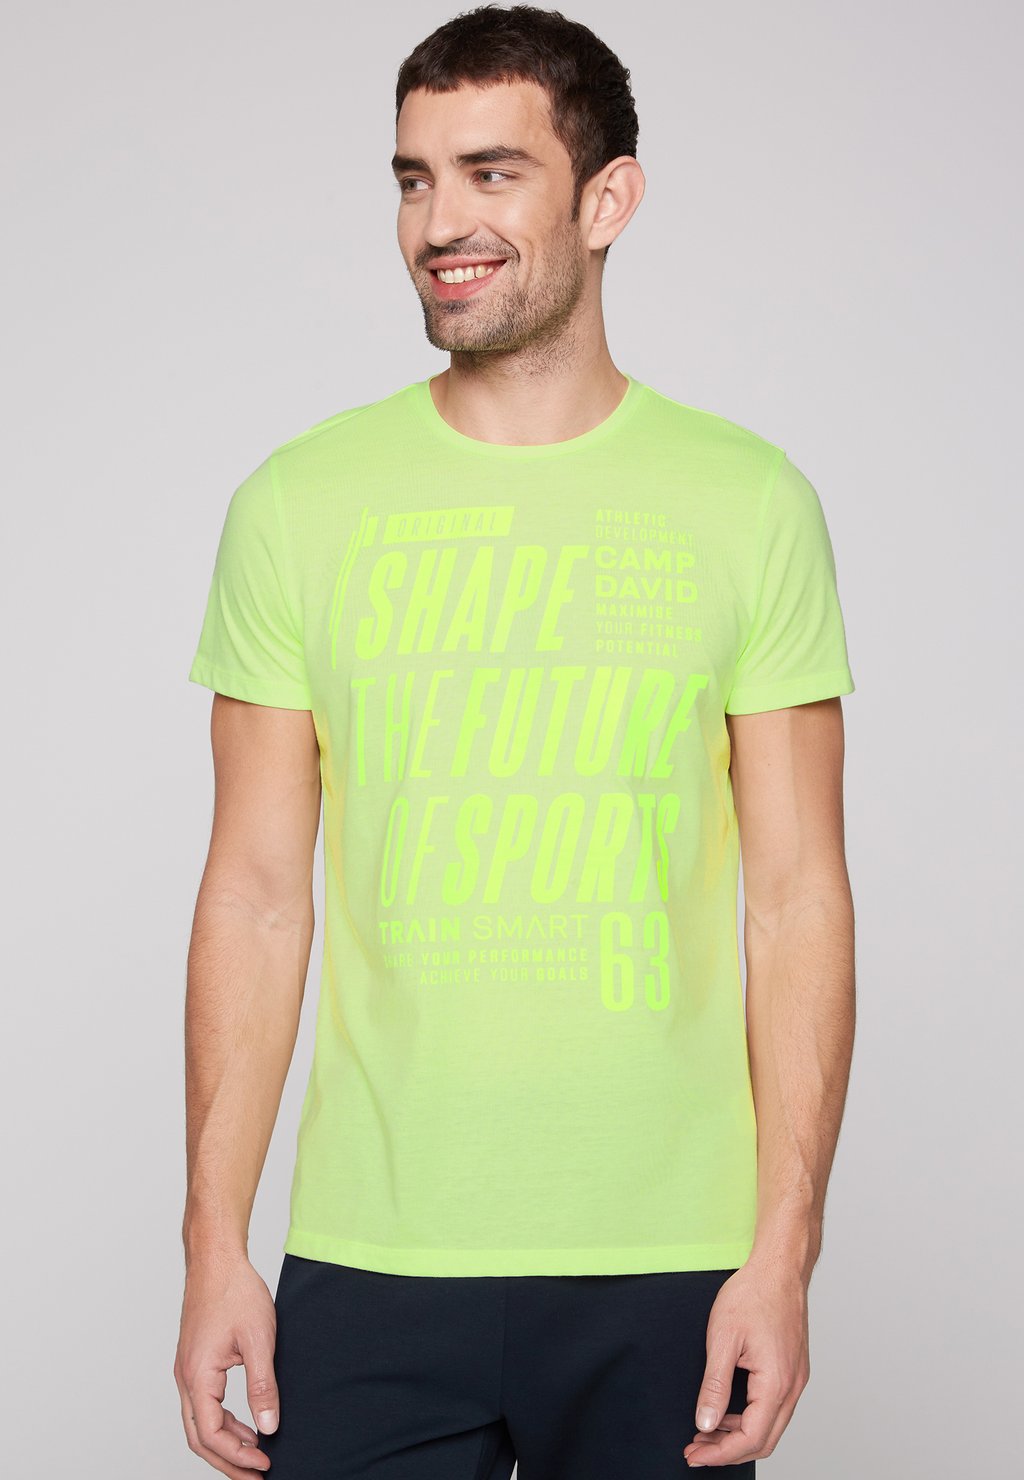 футболка базовая v neck mit lammgarnstruktur camp david цвет sea green Футболка с принтом MIT ARTWORK Camp David, цвет running green